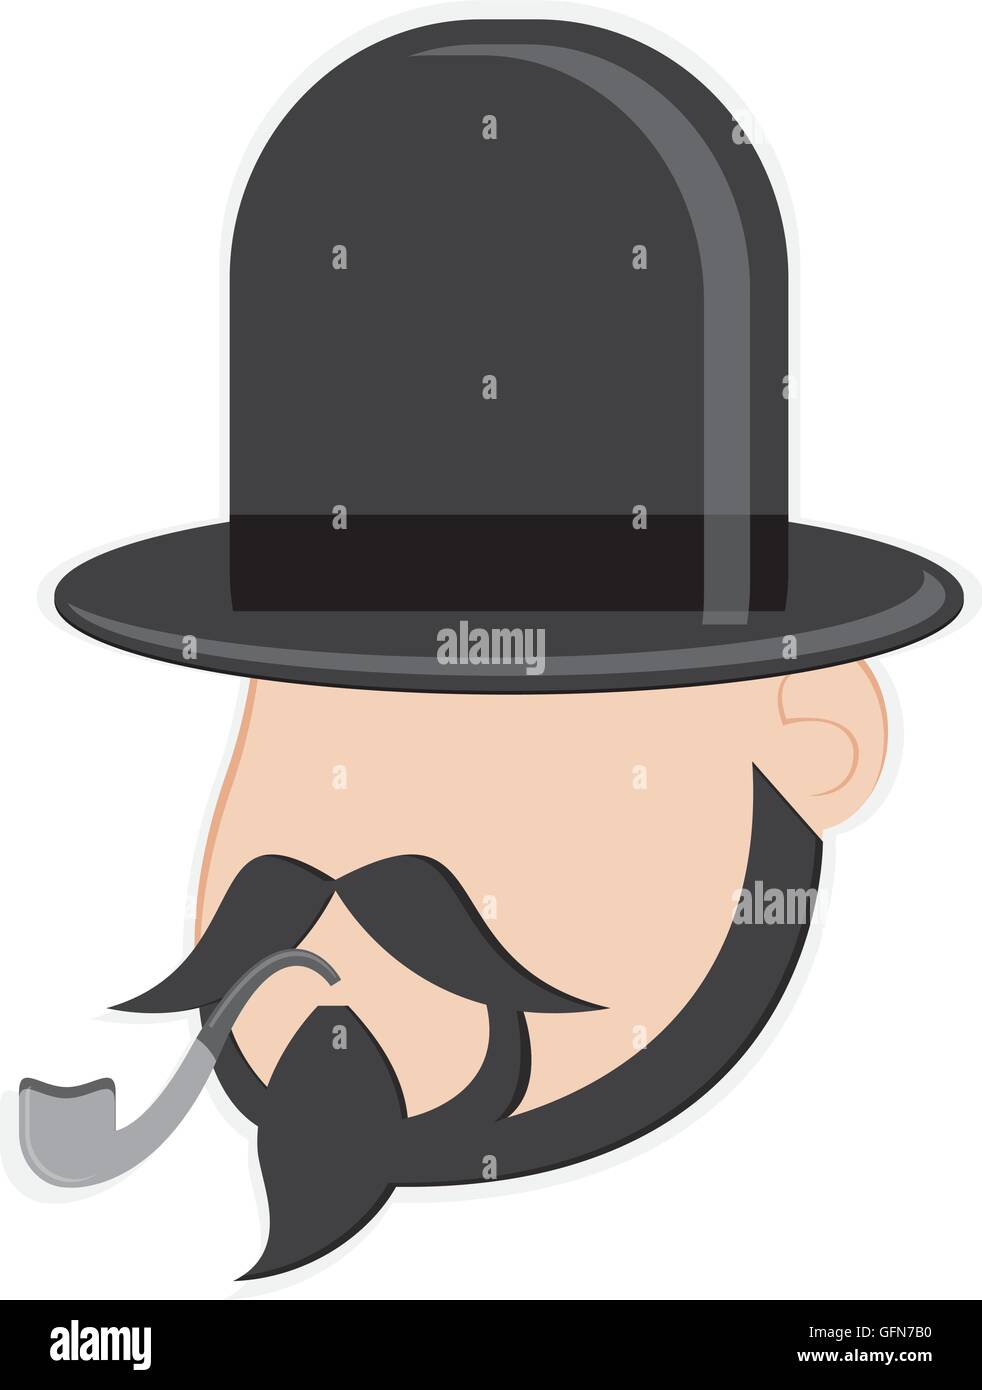 der Mann ohne Gesicht-Kopf mit Gesicht Haare und Hut-Symbol  Stock-Vektorgrafik - Alamy